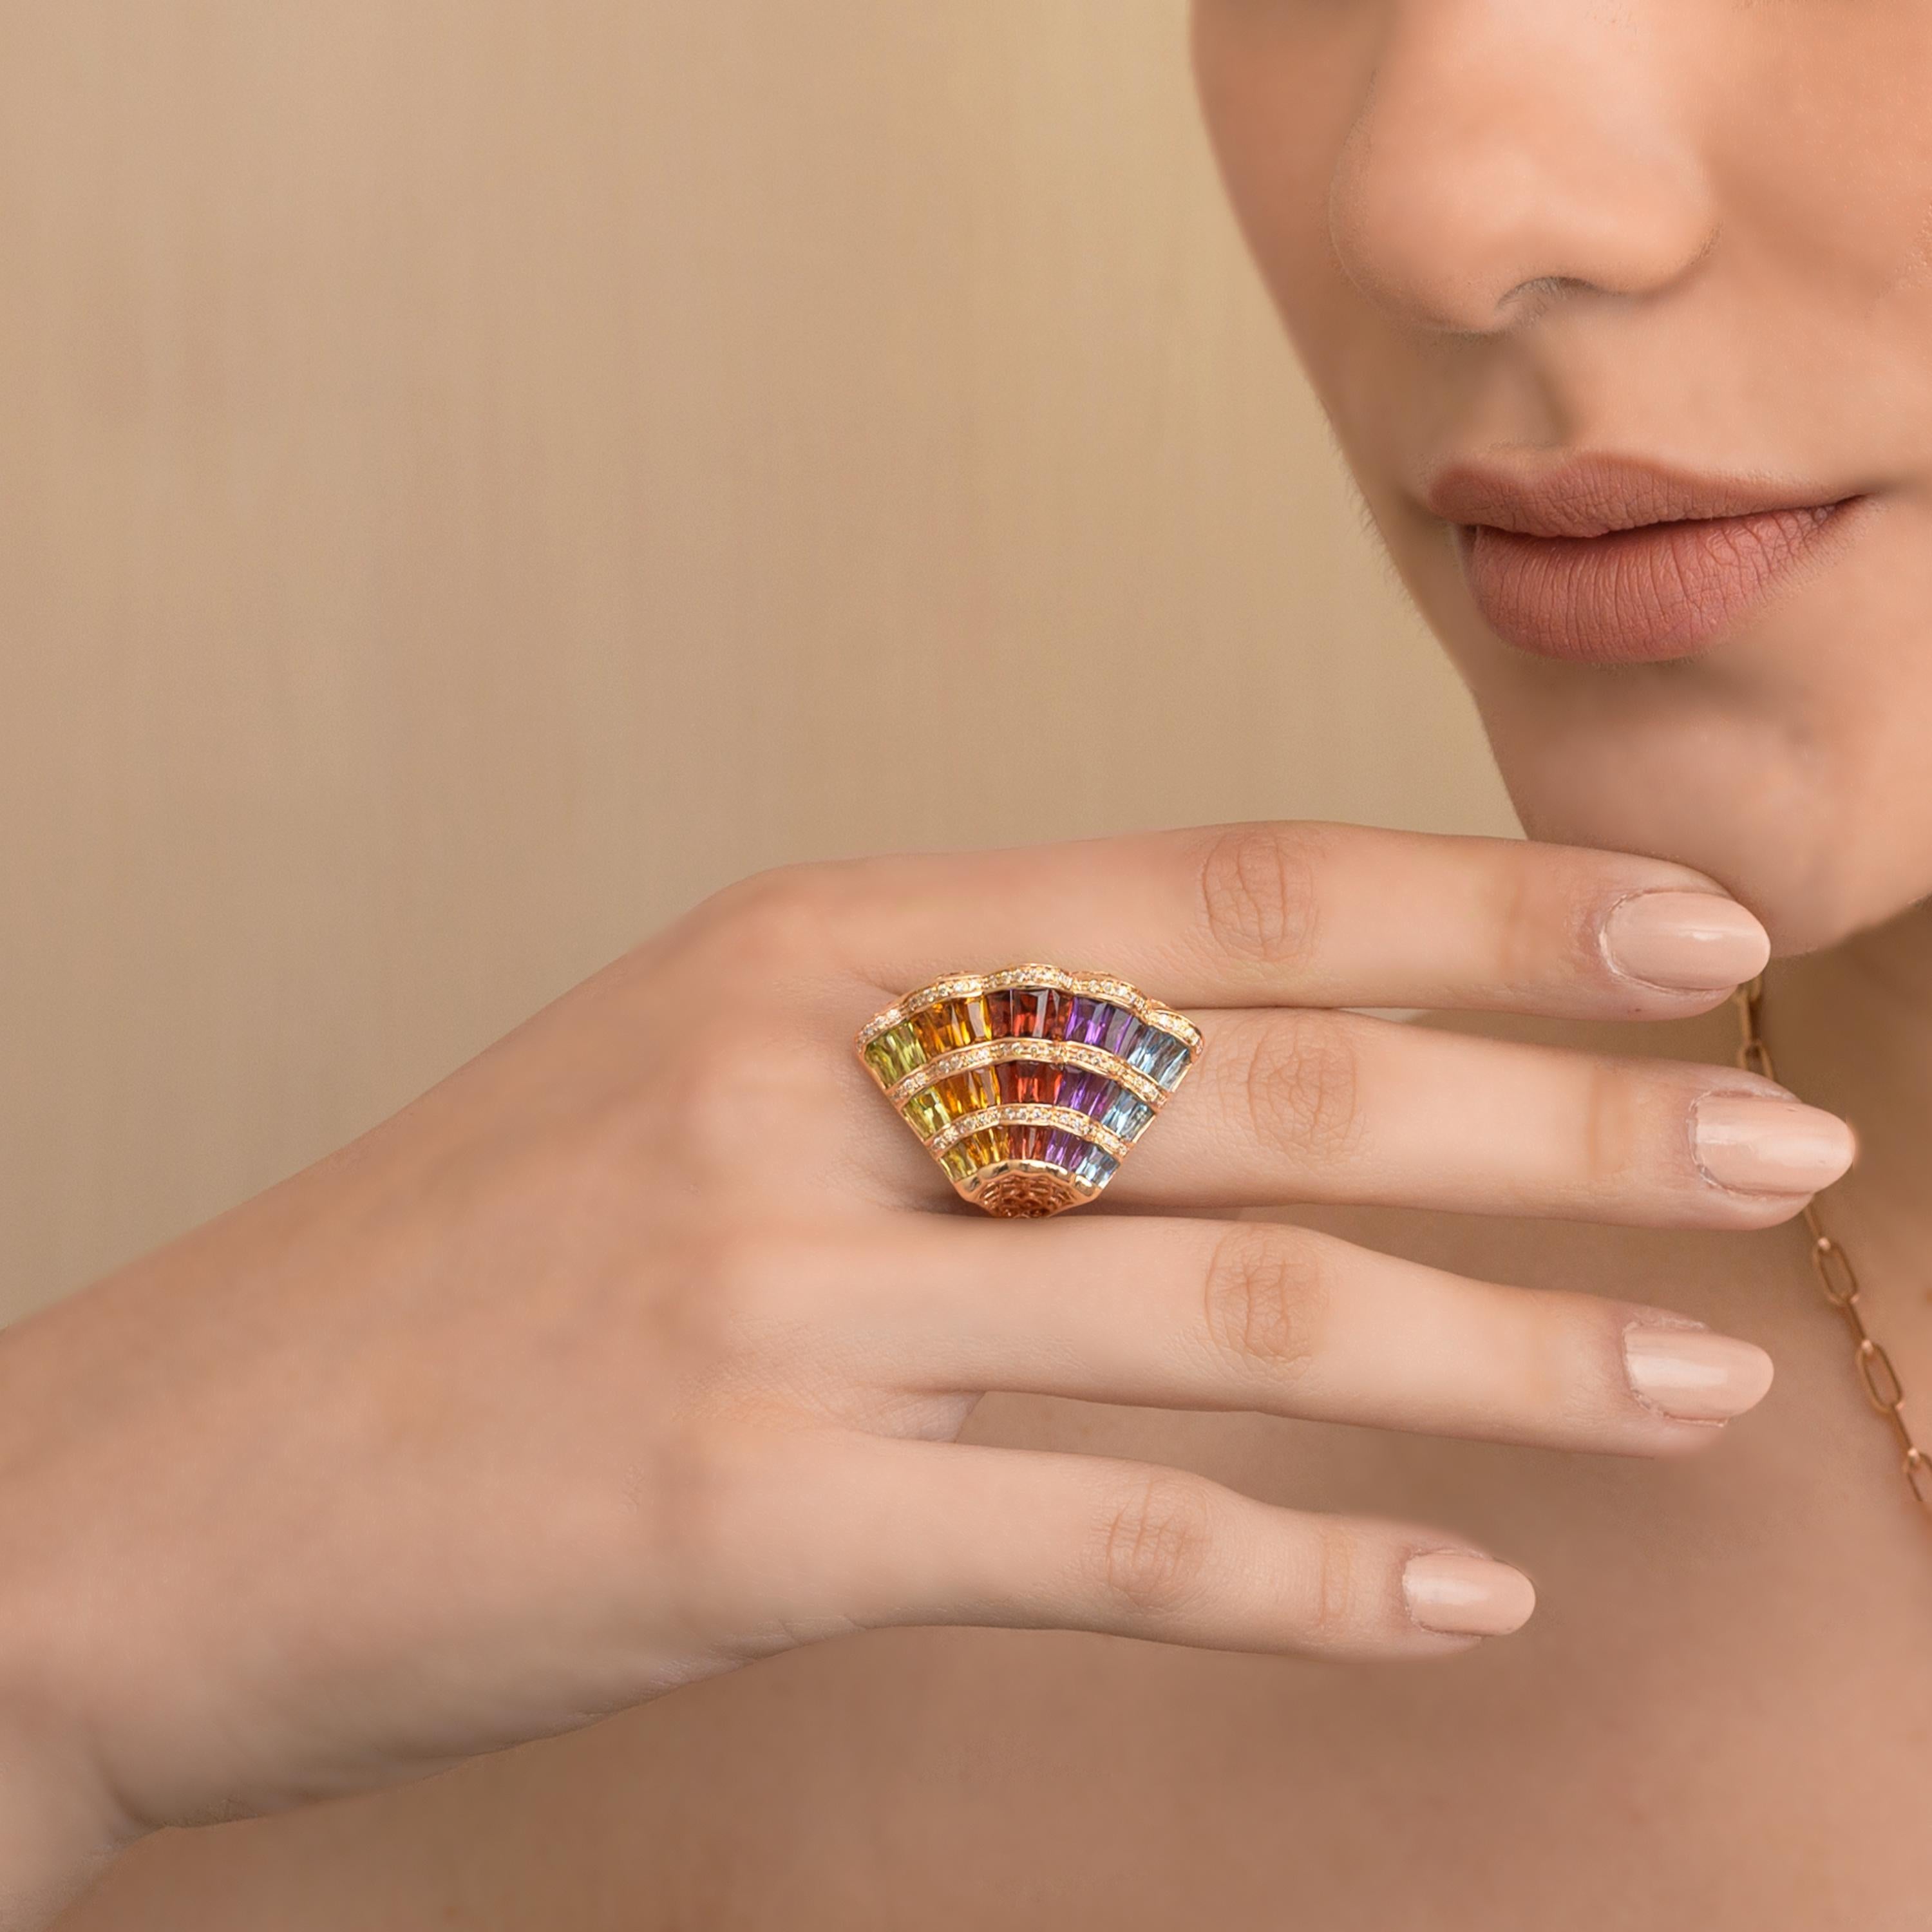 Lassen Sie sich von der Schönheit und Raffinesse dieses Cocktailrings mit Regenbogen-Edelsteinen verzaubern - ein absoluter Hingucker, der über konventionelles Schmuckdesign hinausgeht. Dieser bemerkenswerte Ring ist von Anmut und Farbe durchdrungen